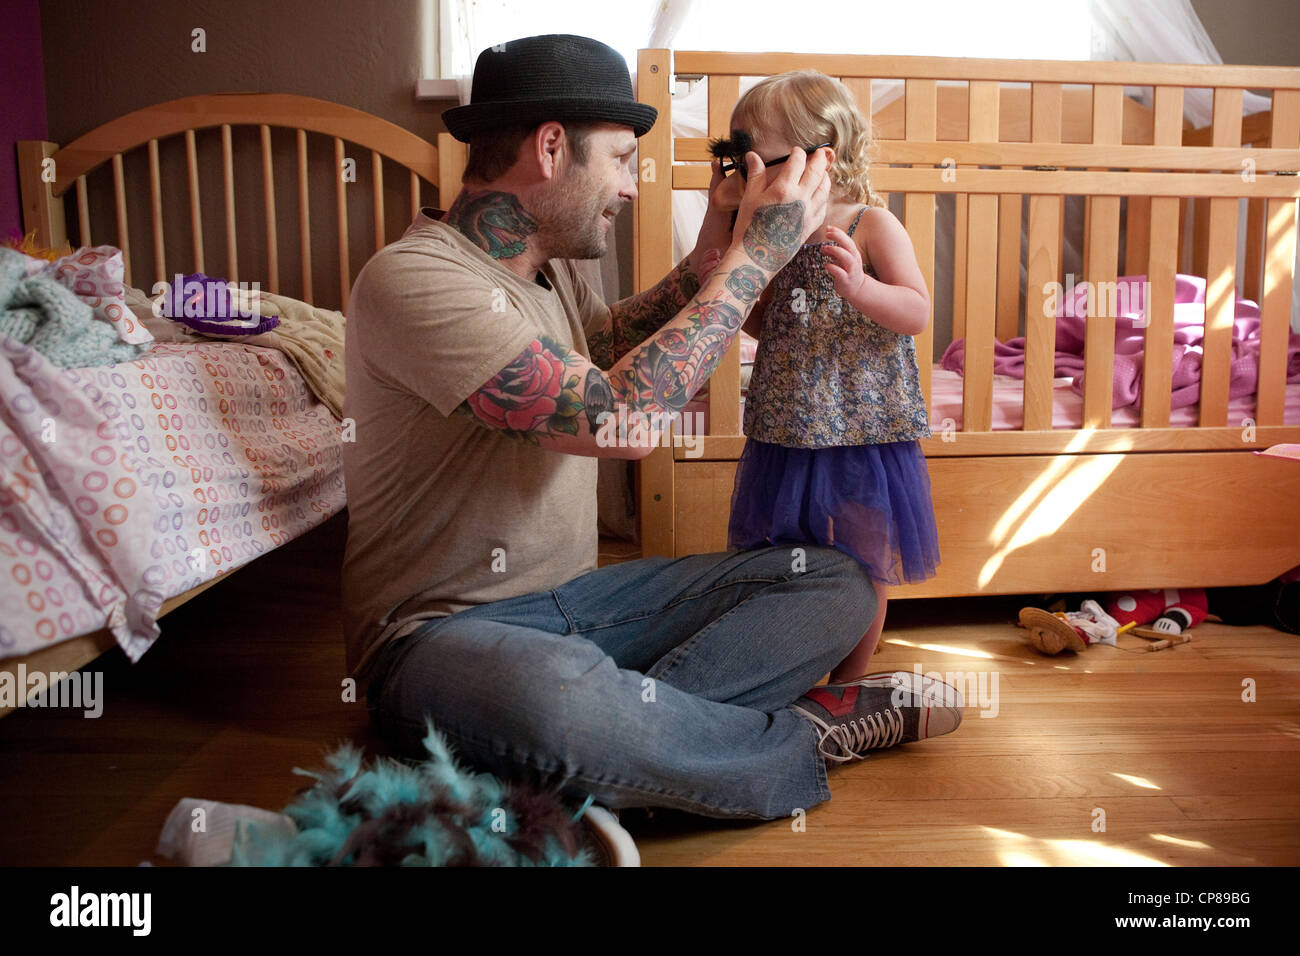 Vater mit Tattoo auf Arme spielt mit seiner Tochter in ihrem Schlafzimmer, dumme vorgeben Schnurrbart und Brille anprobieren. Stockfoto